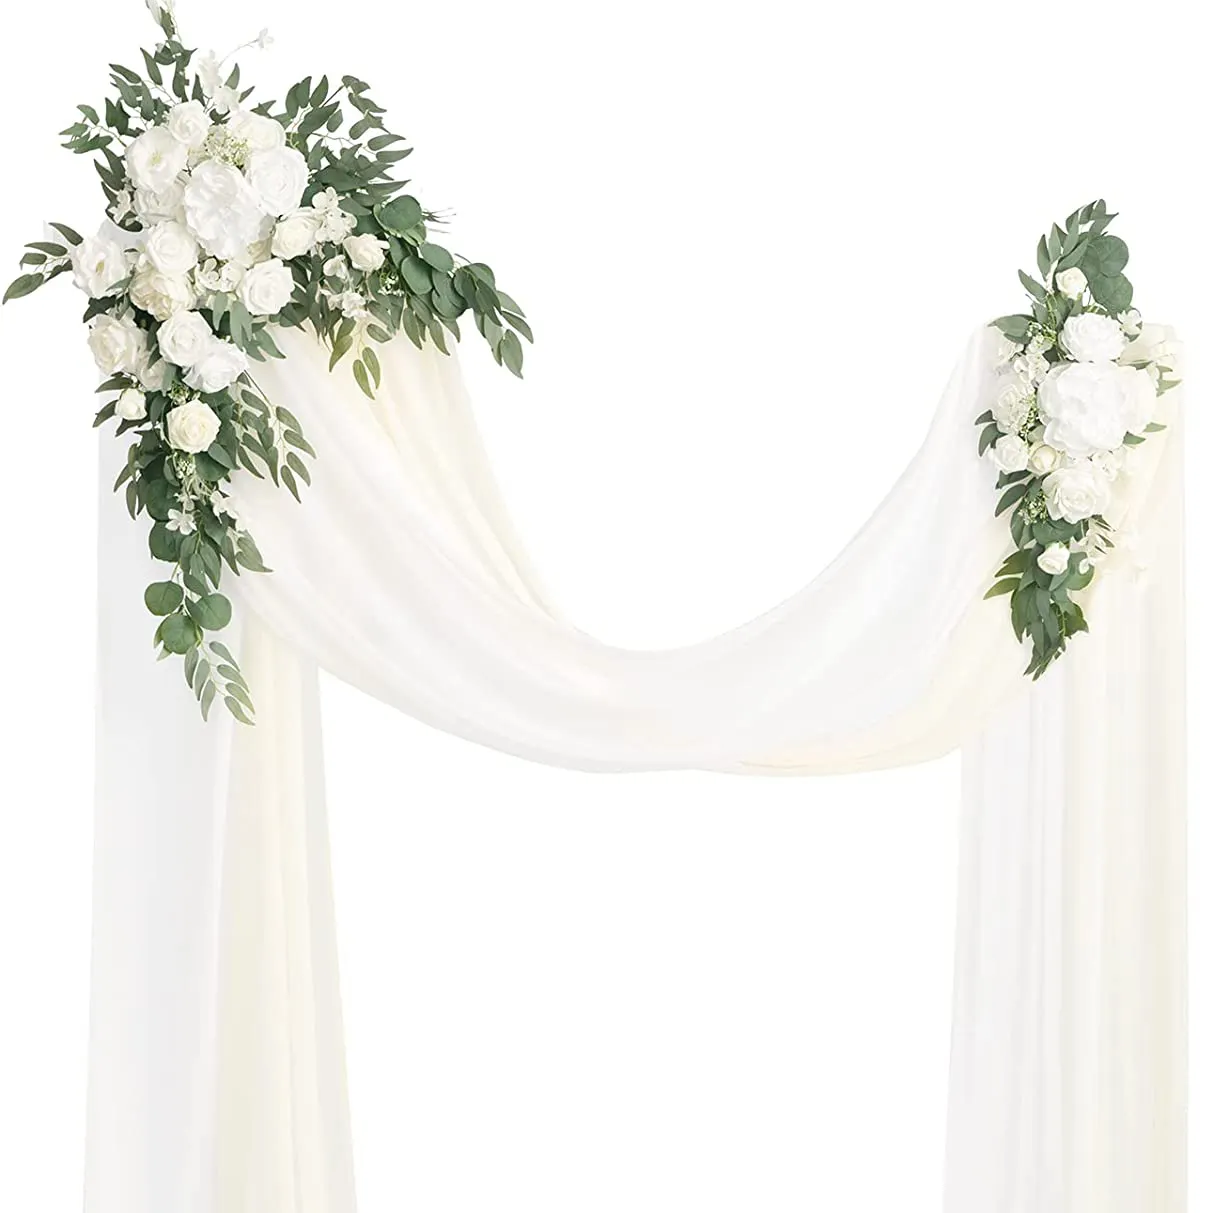 थोक शादी पर्दा पृष्ठभूमि पाइप और टांगना पृष्ठभूमि सफेद पर्दे के कपड़े शिफॉन सजावटी फूल शादी के लिए